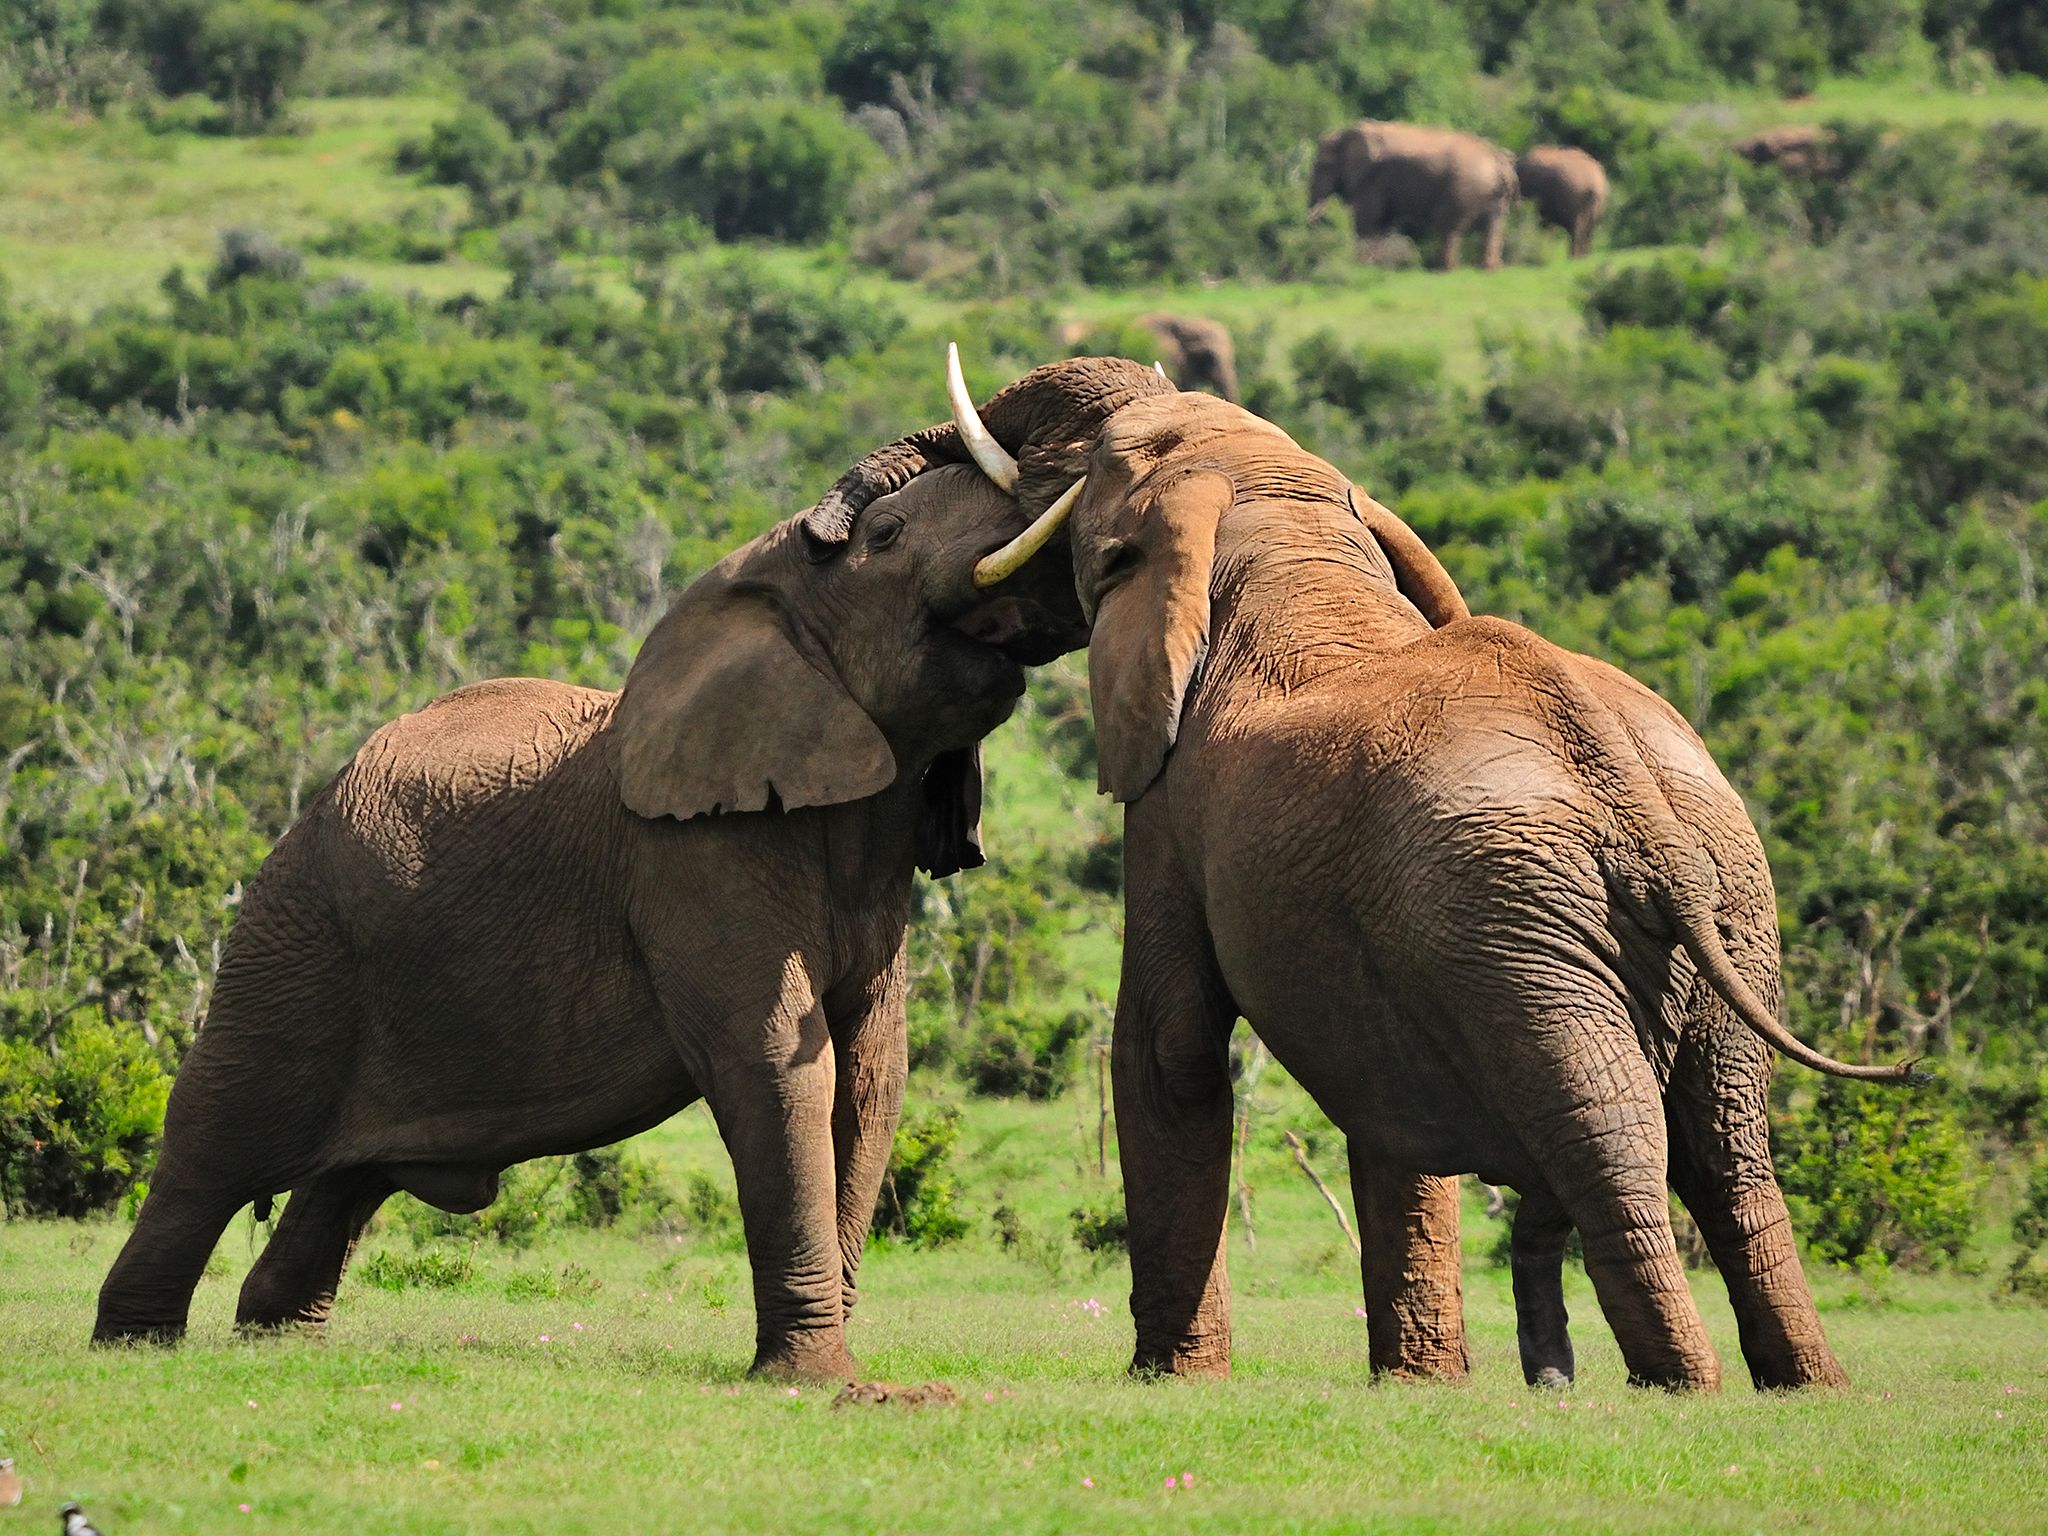 جنوب أفريقيا: تتميز الفيلة بمتوسط عمرها الذي يُعد... [Photo of the day - ديسمبر 2016]